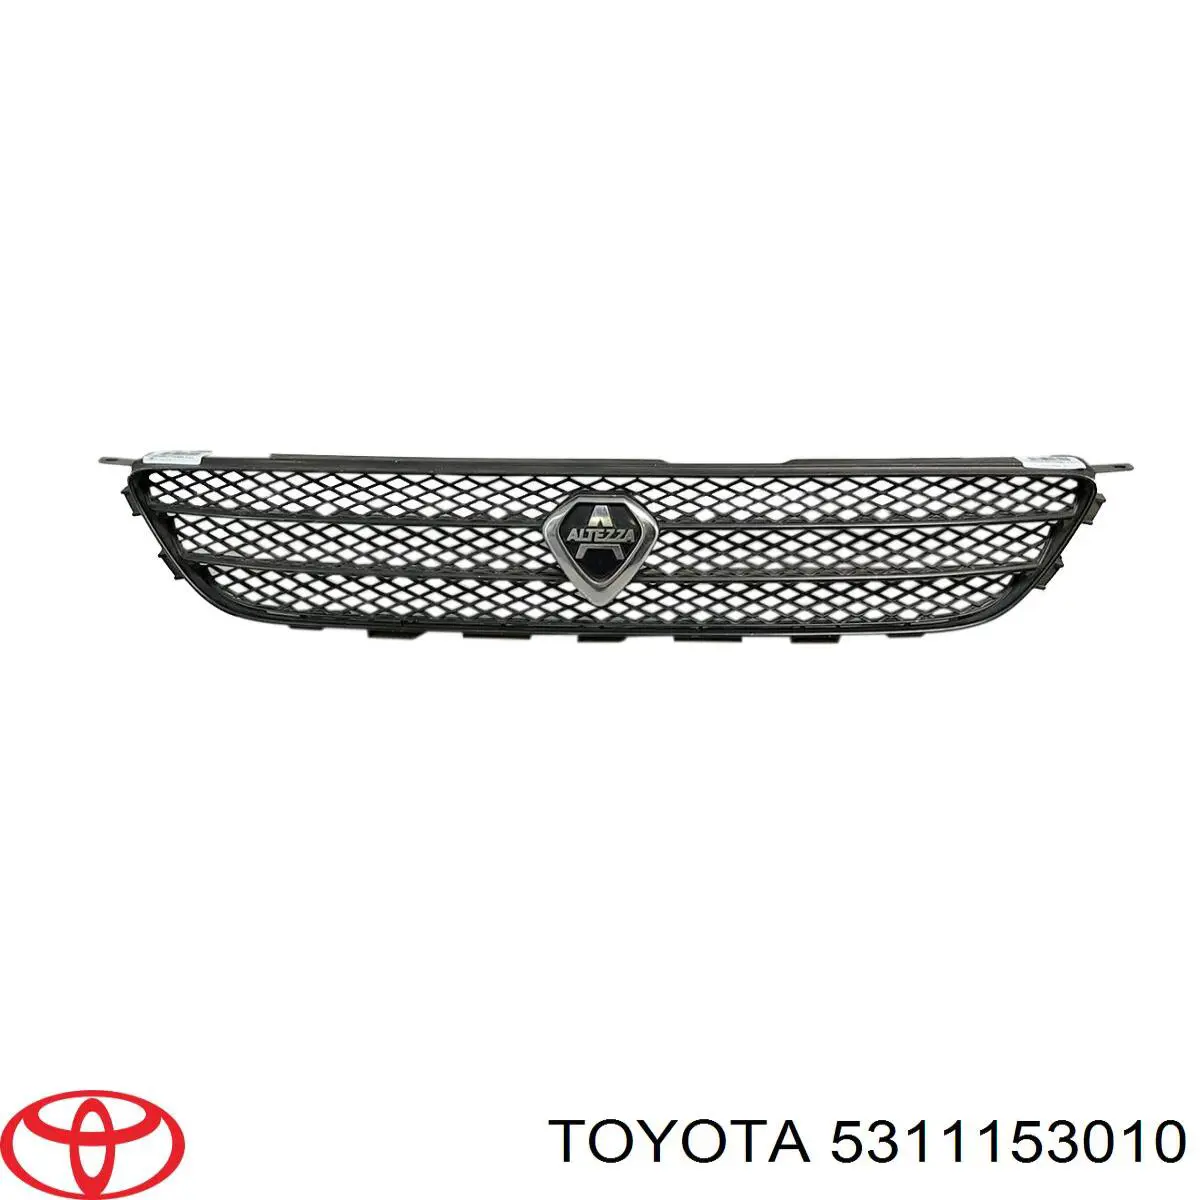 5311153010 Toyota rejilla de ventilación, parachoques trasero, central